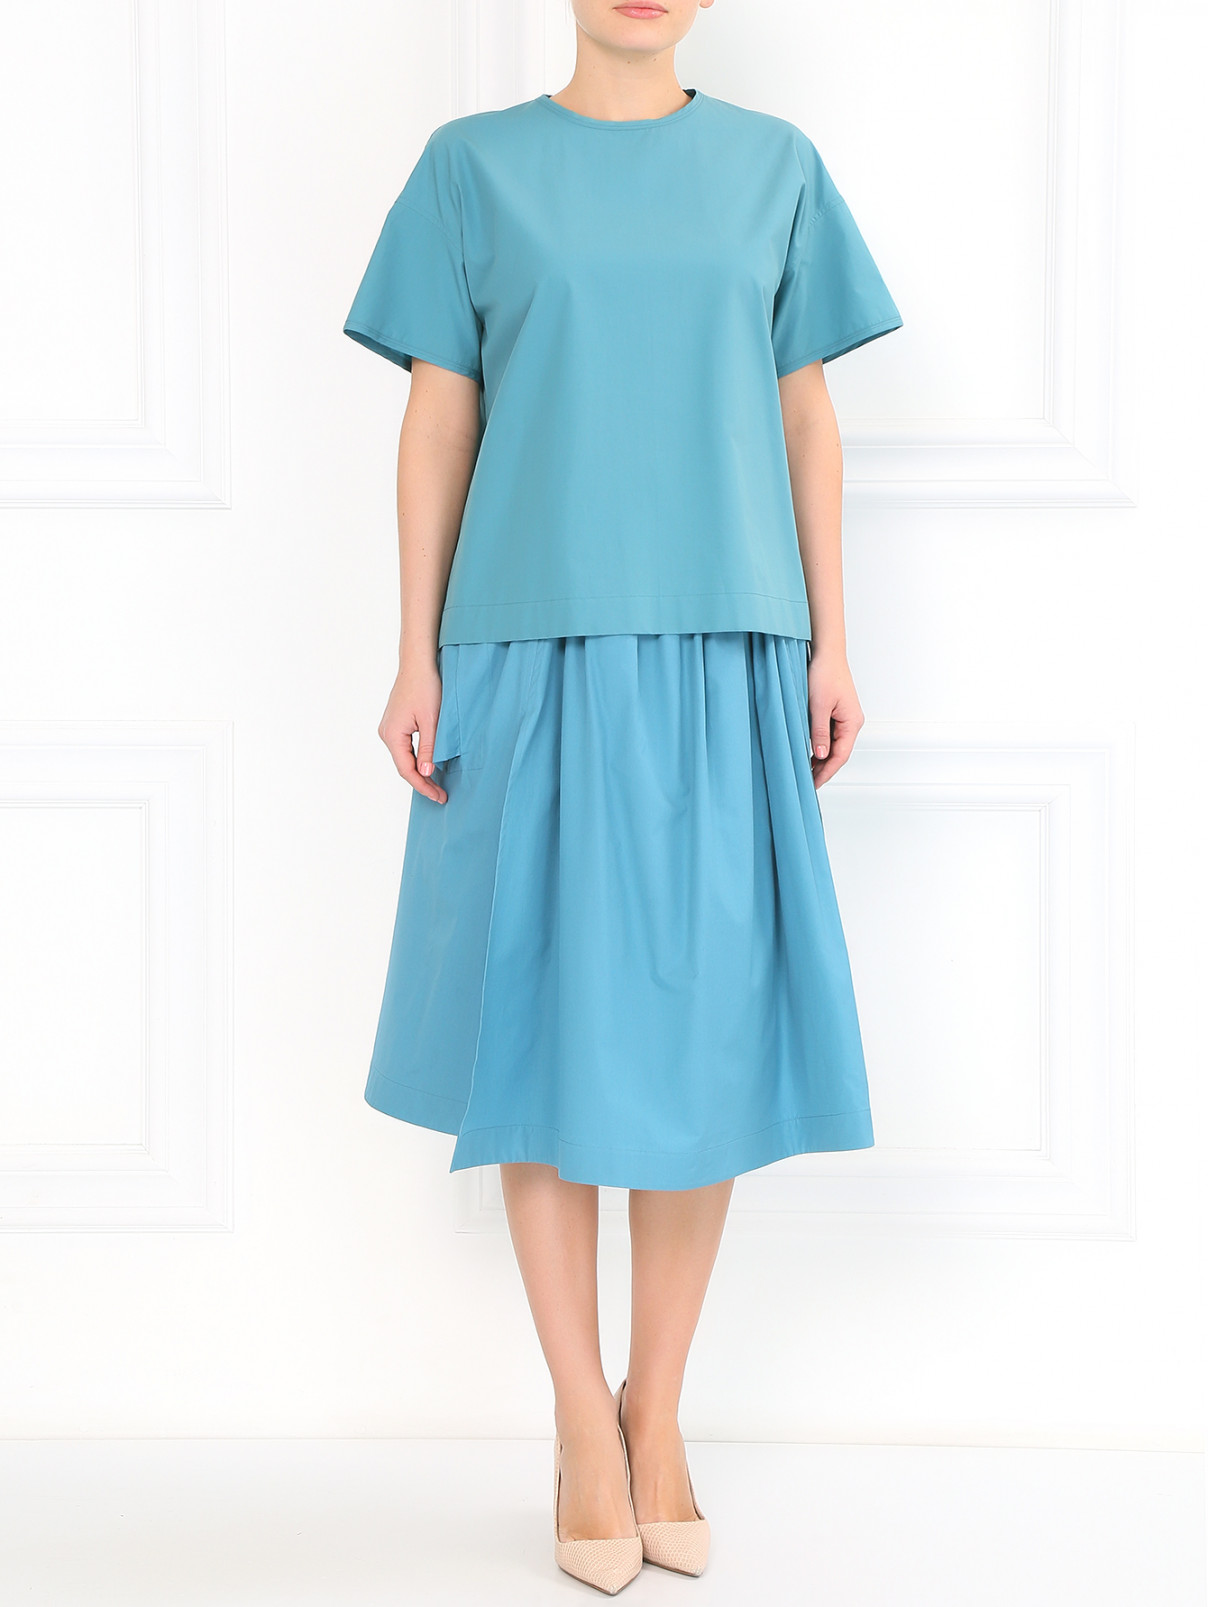 Многослойная юбка из хлопка с боковыми карманами Jil Sander  –  Модель Общий вид  – Цвет:  Зеленый